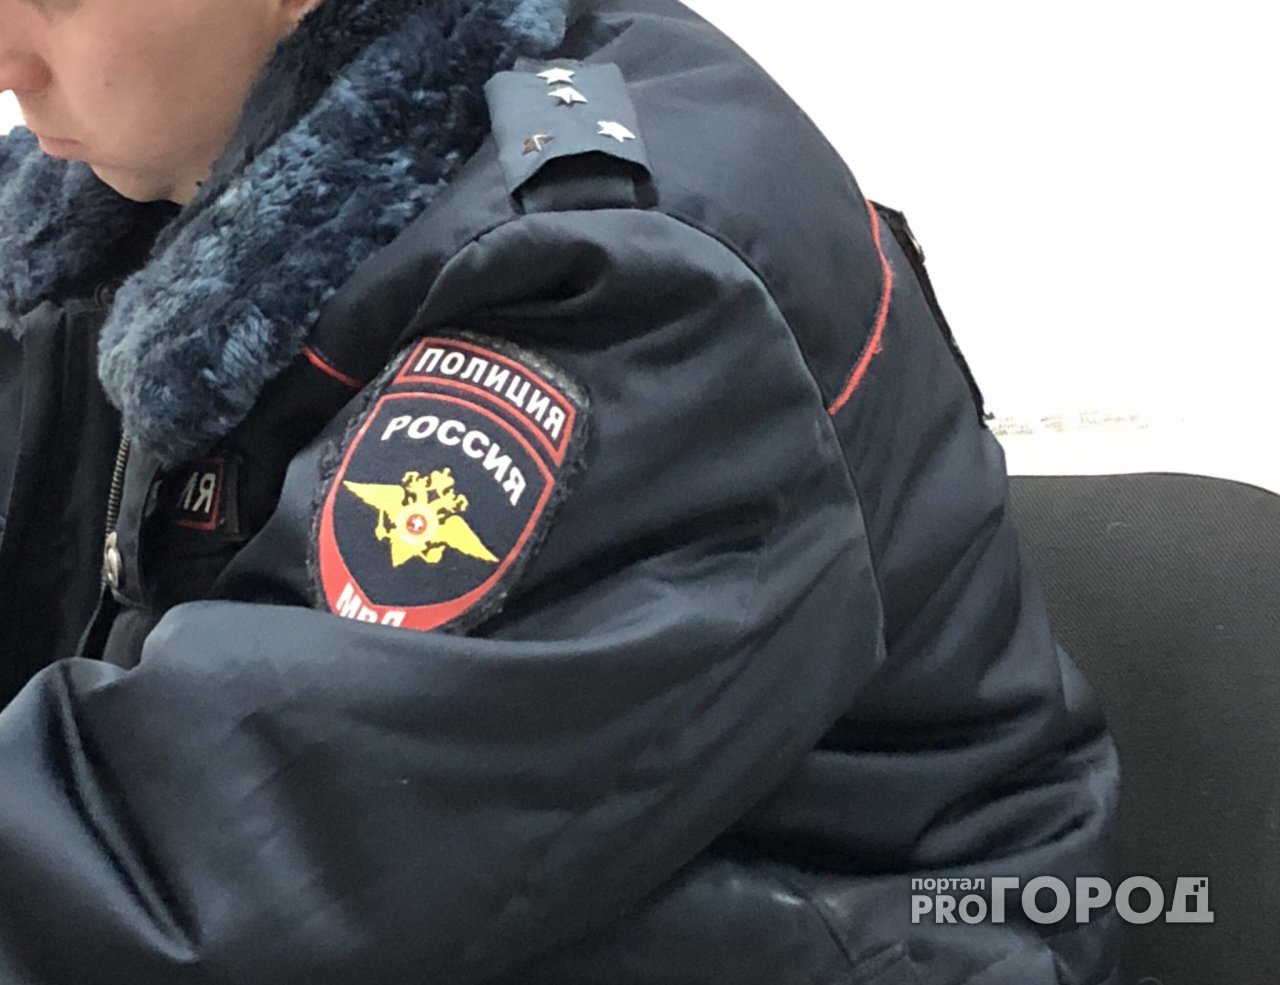 В Ярославле осудили автолюбителя, который соврал полицейским